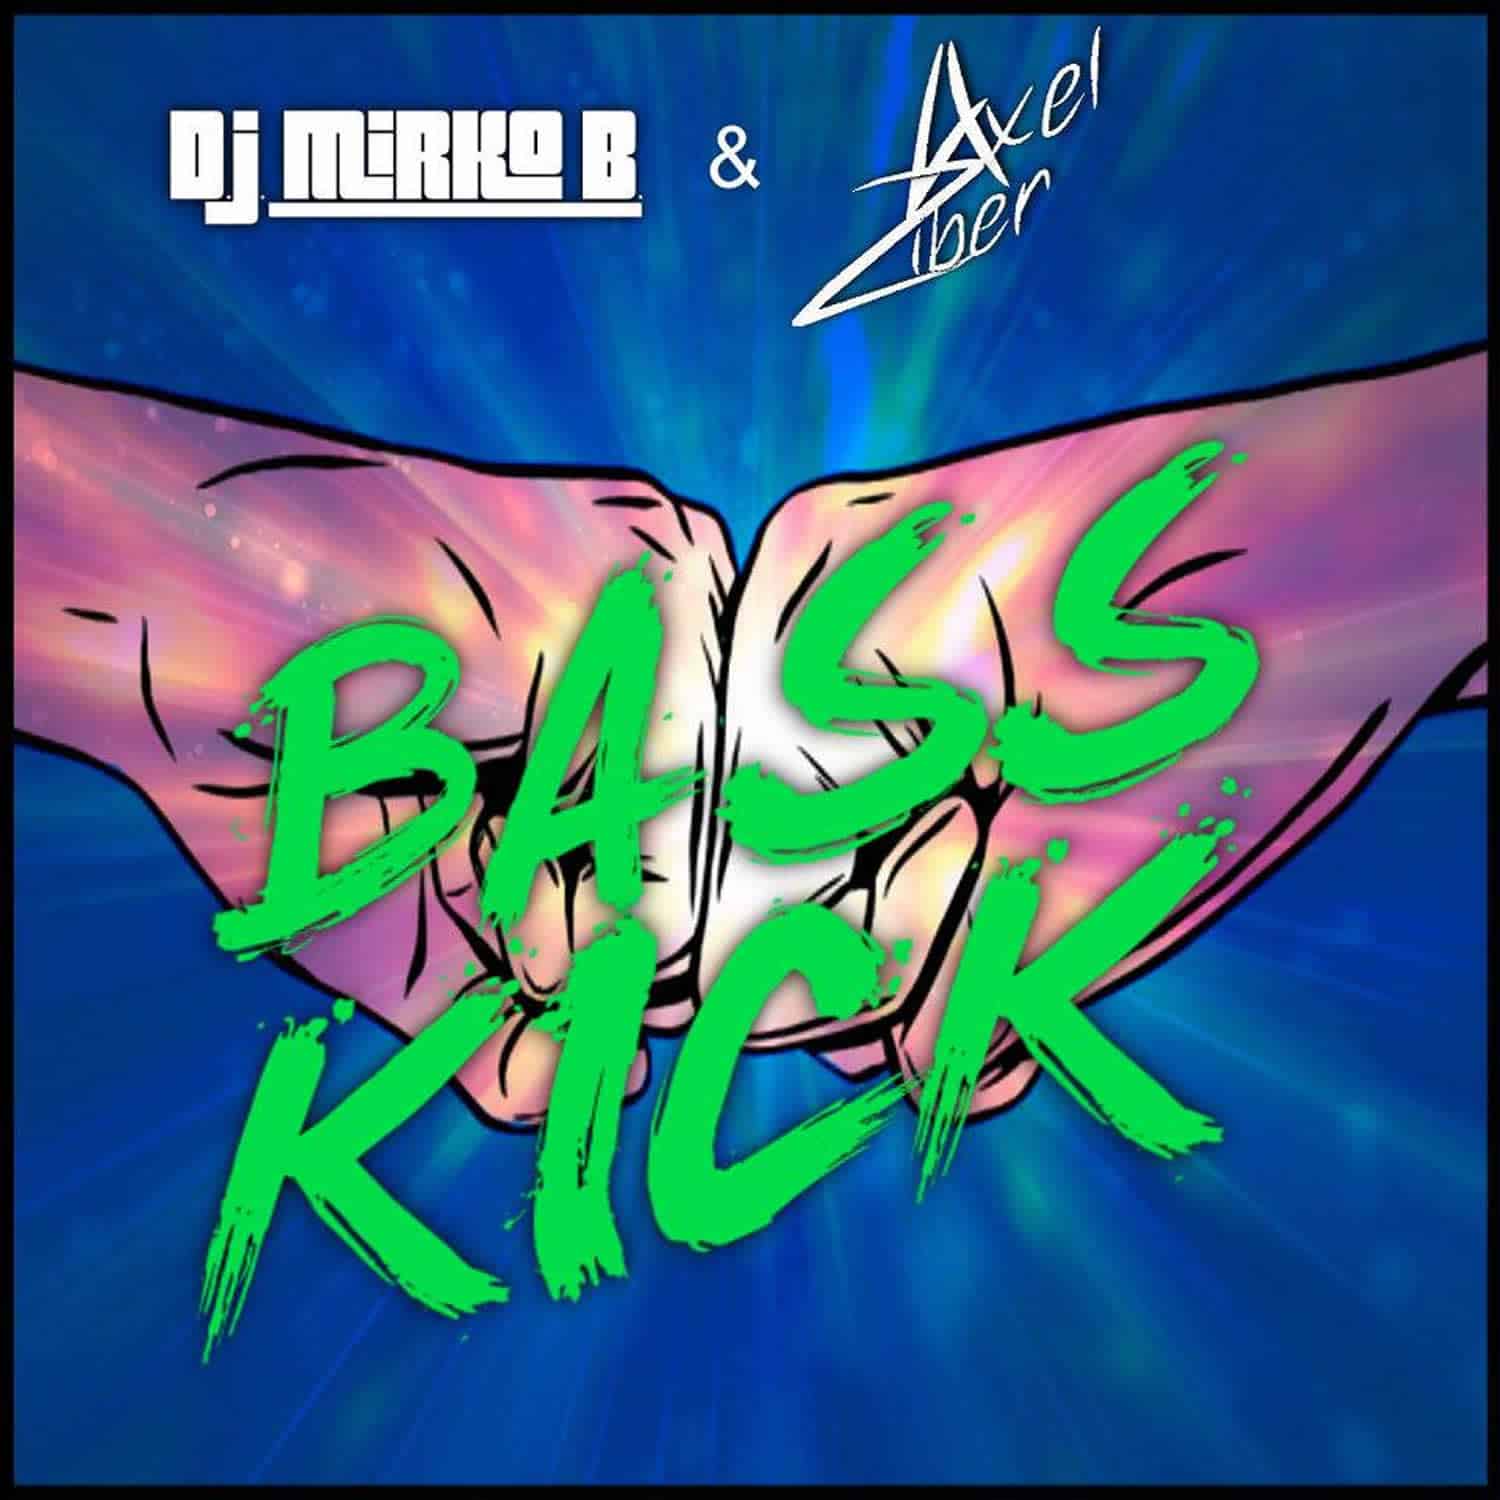 Dj bass kick. D.J. Mirko b.. Bass Kick. Ziber 7. Dk Bass the Kicked.